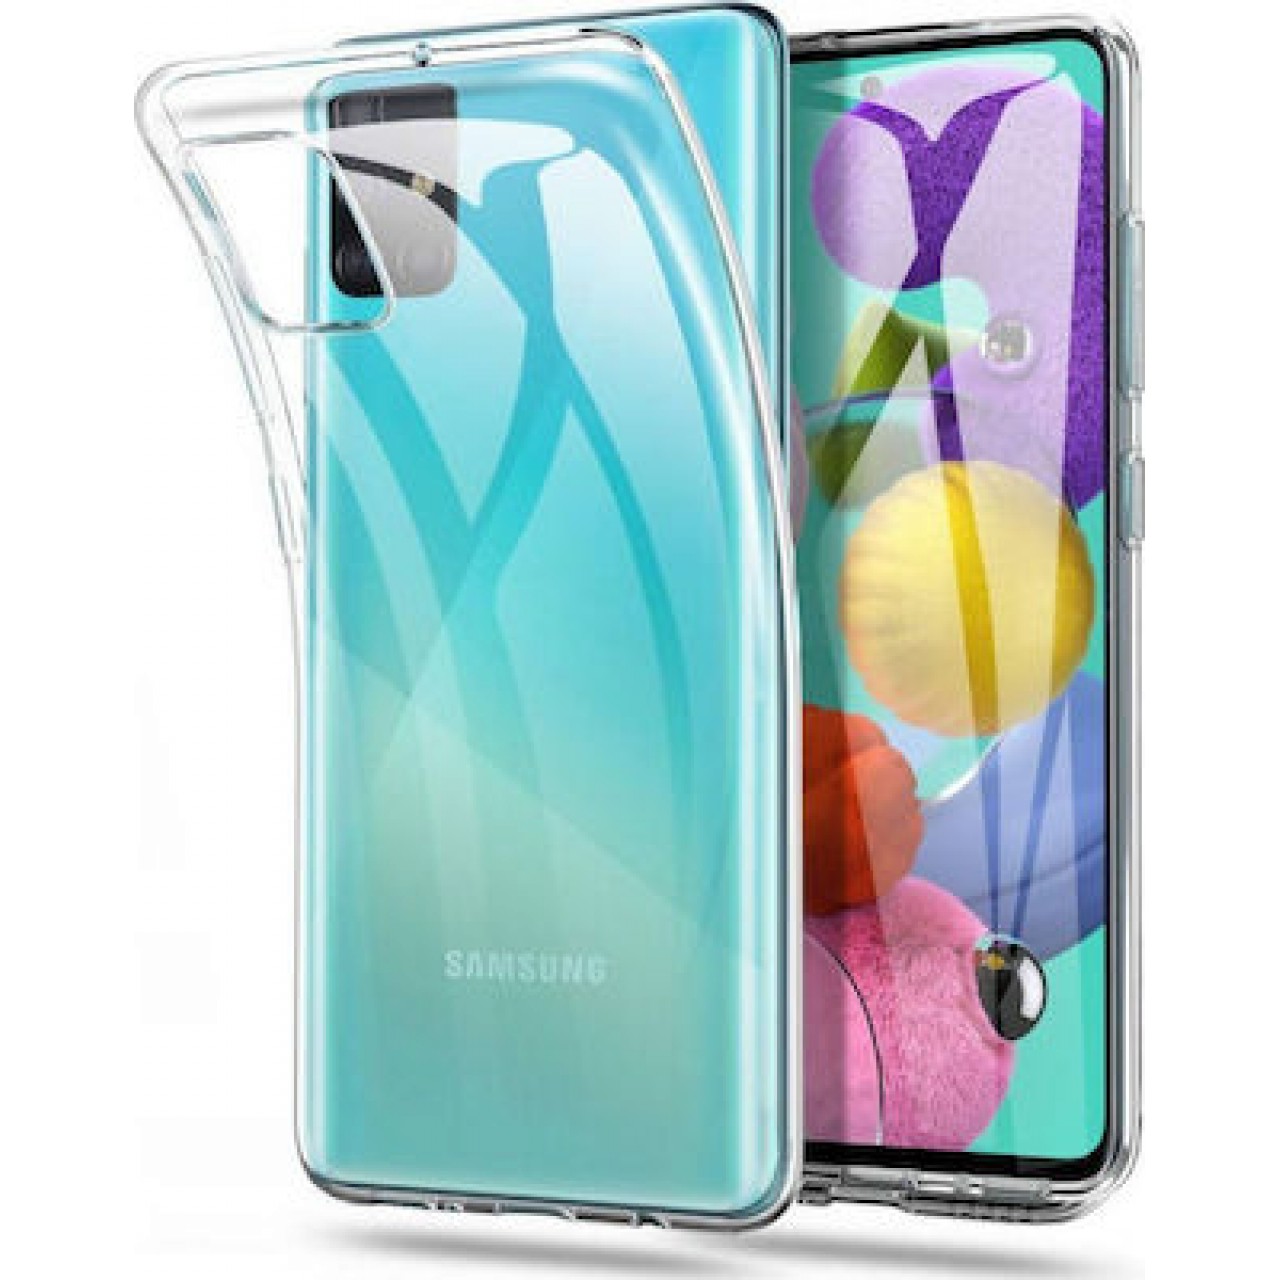 Θήκη Προστασίας Σιλικόνης Samsung Galaxy S10 Lite - Back Cover Silicone Case Oem - Transparent